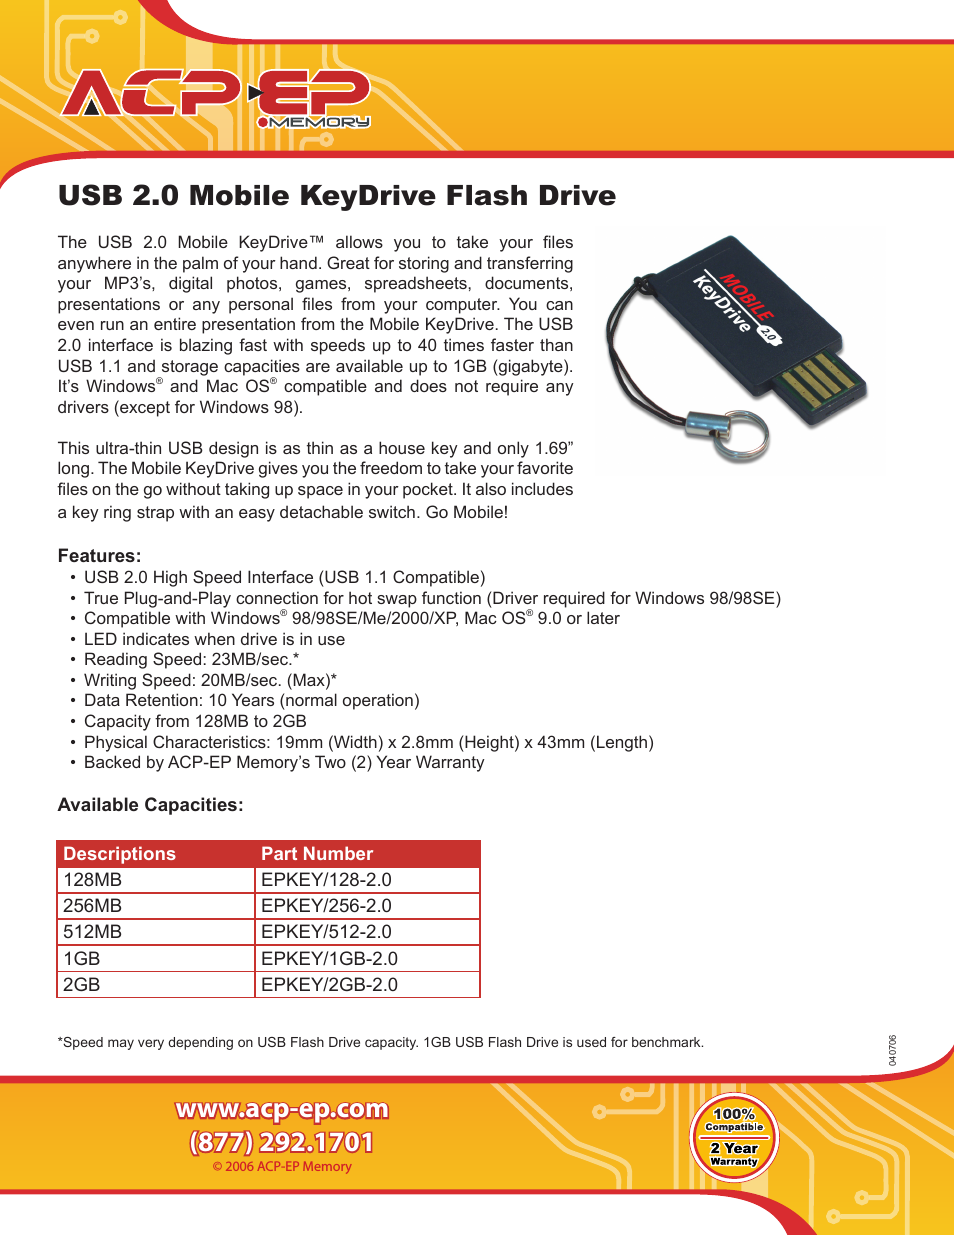 KeyDrive EPKEY/256-2.0